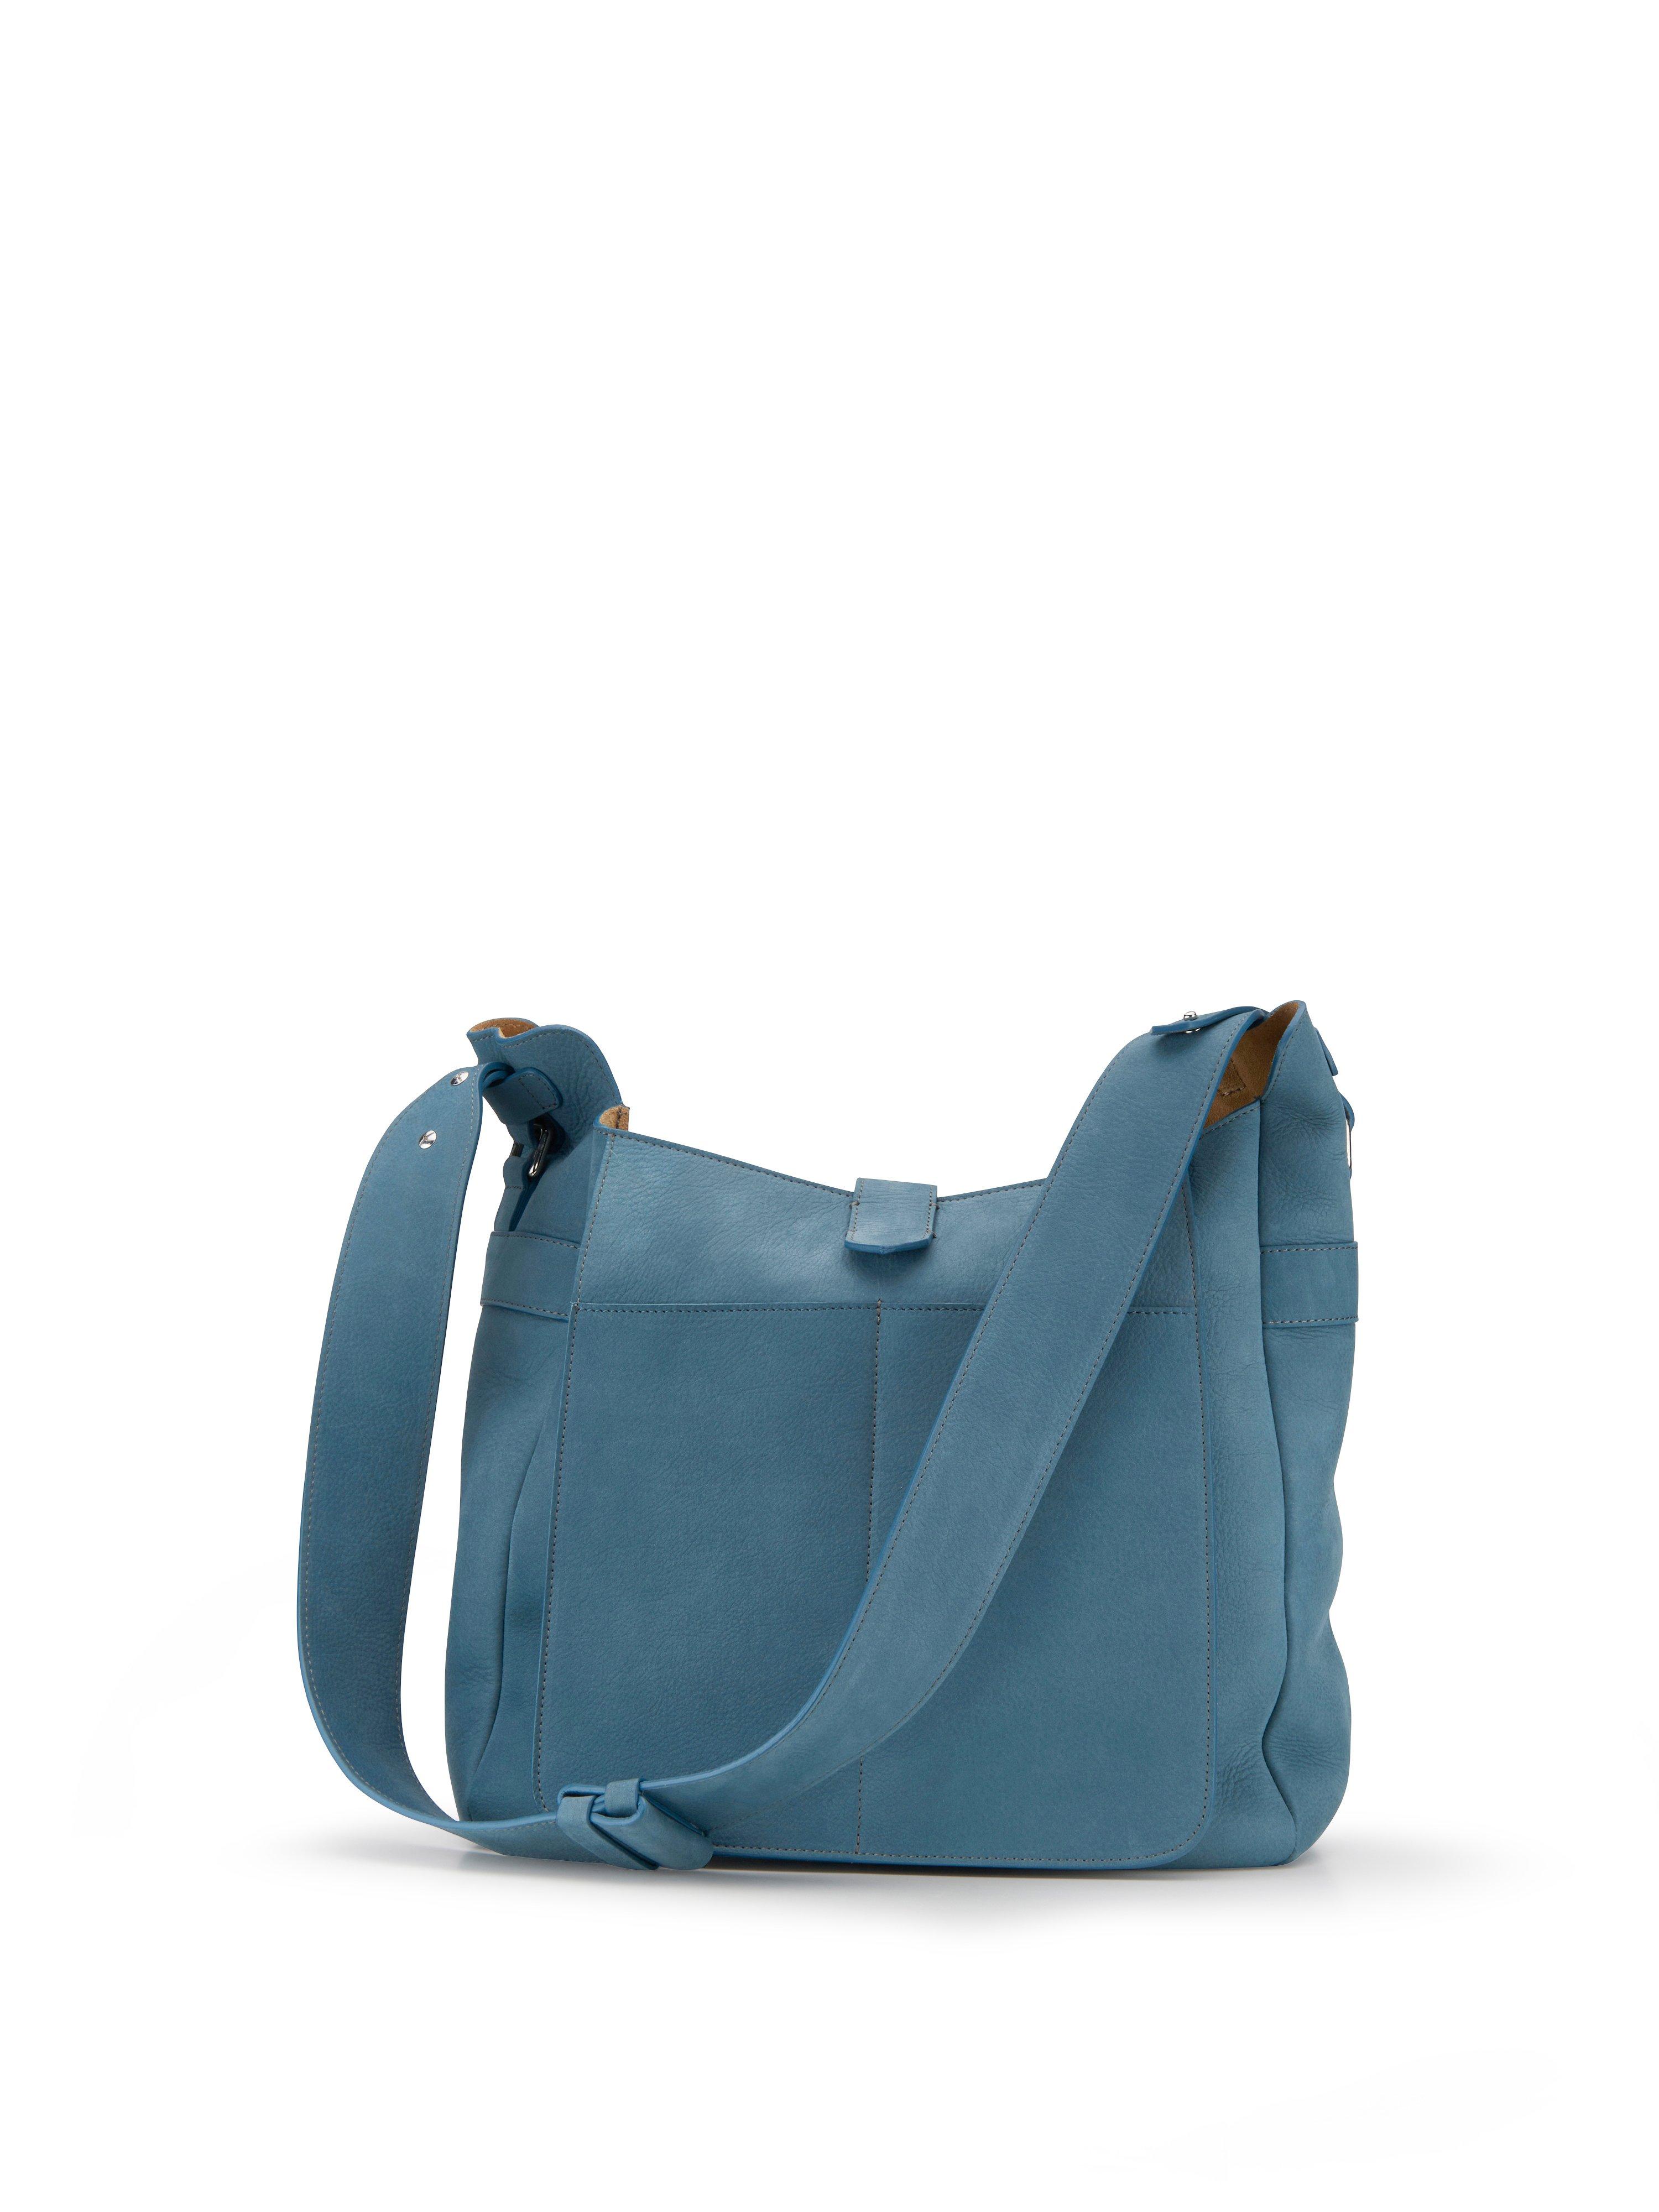 Image of Shoulder bag Meggy K. Munich blue